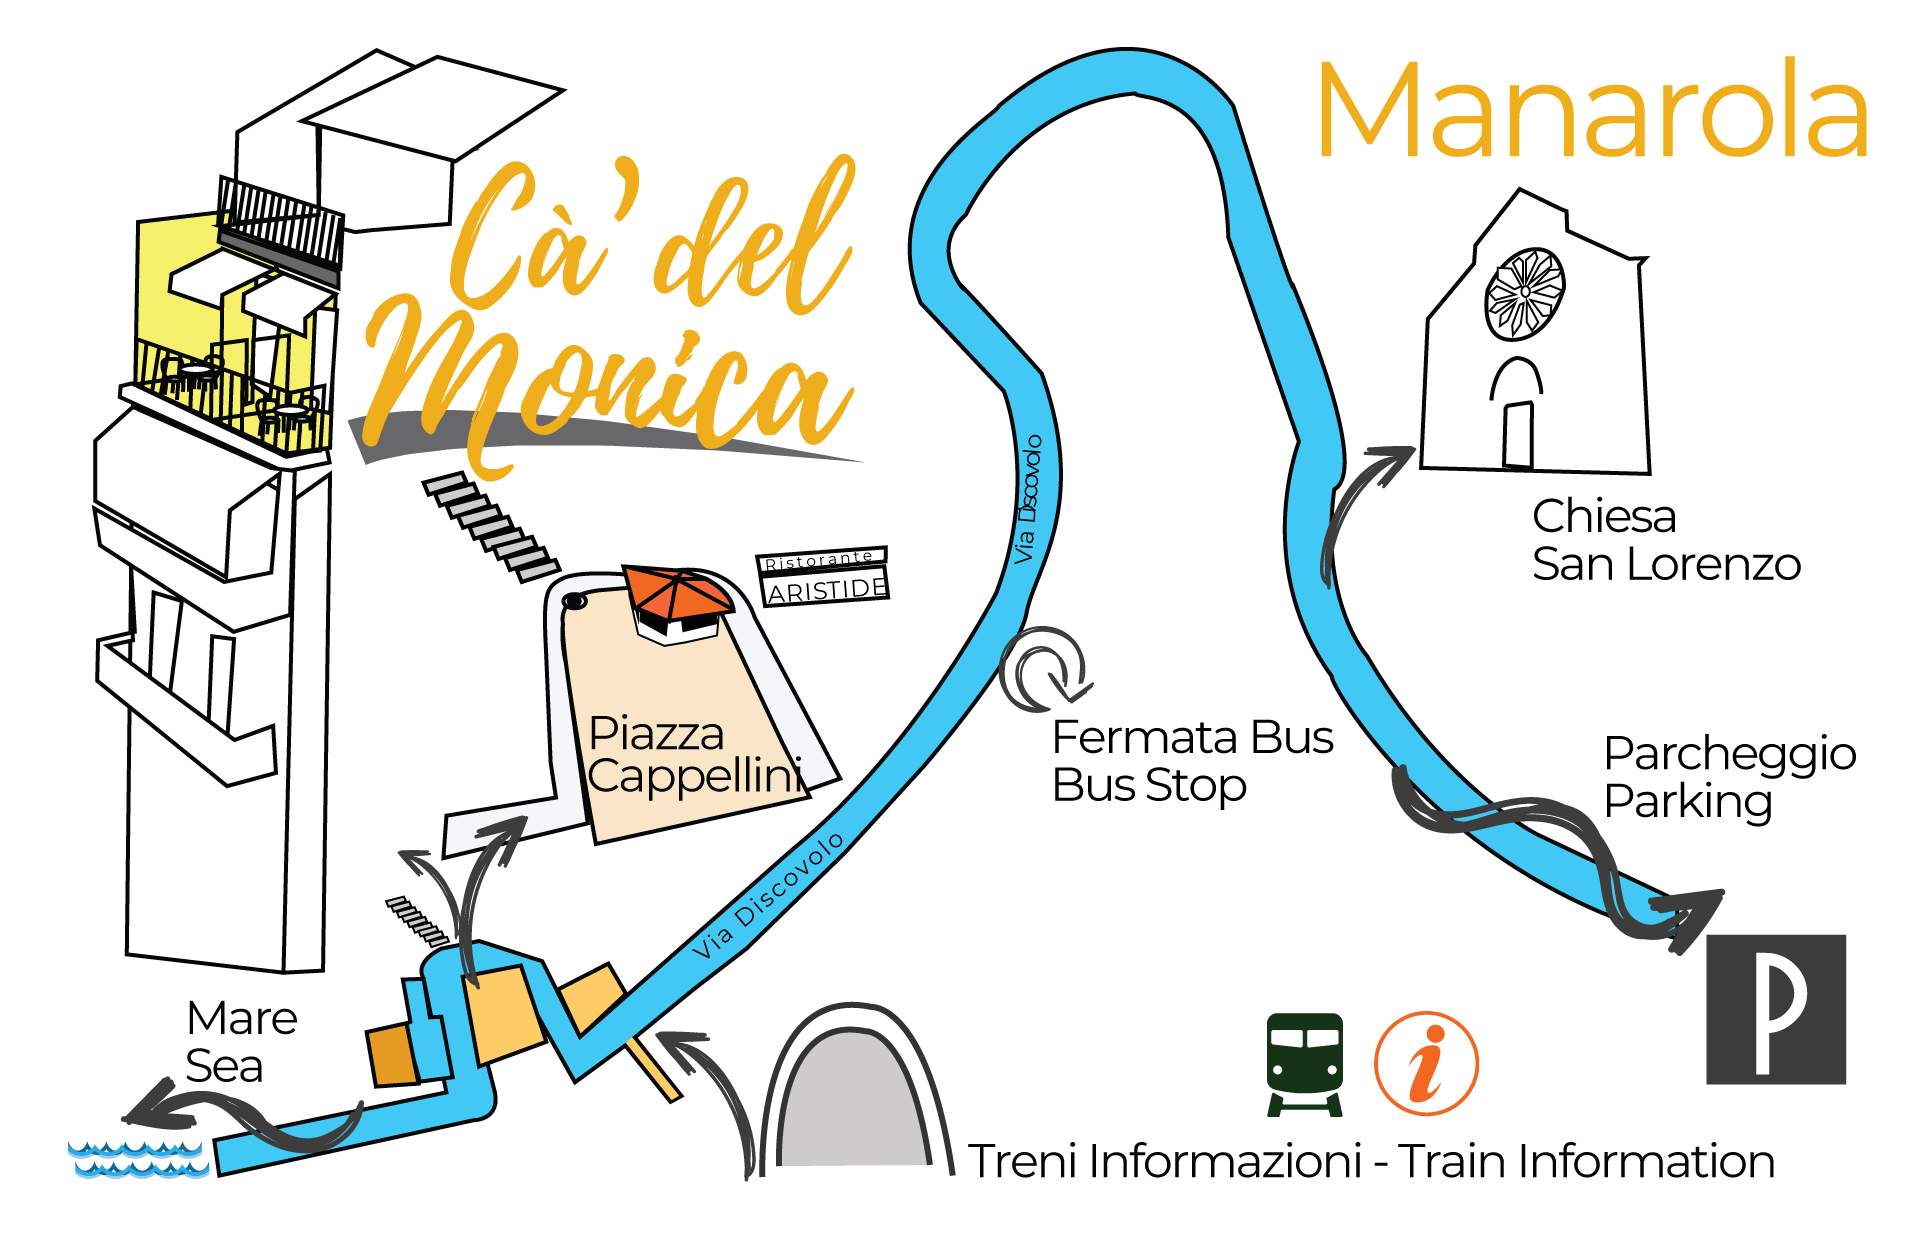 How to reach us in Manarola Cinque terre Ca 'del Monica